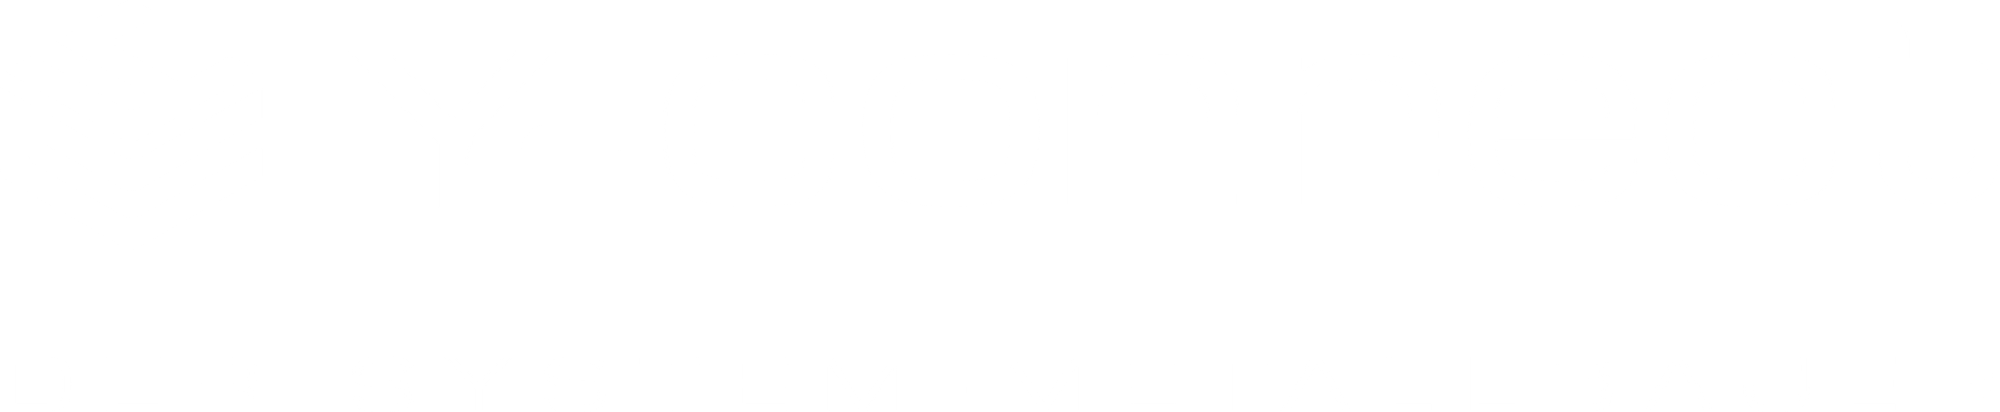 Logo Y-connect Der System-Metallbauer